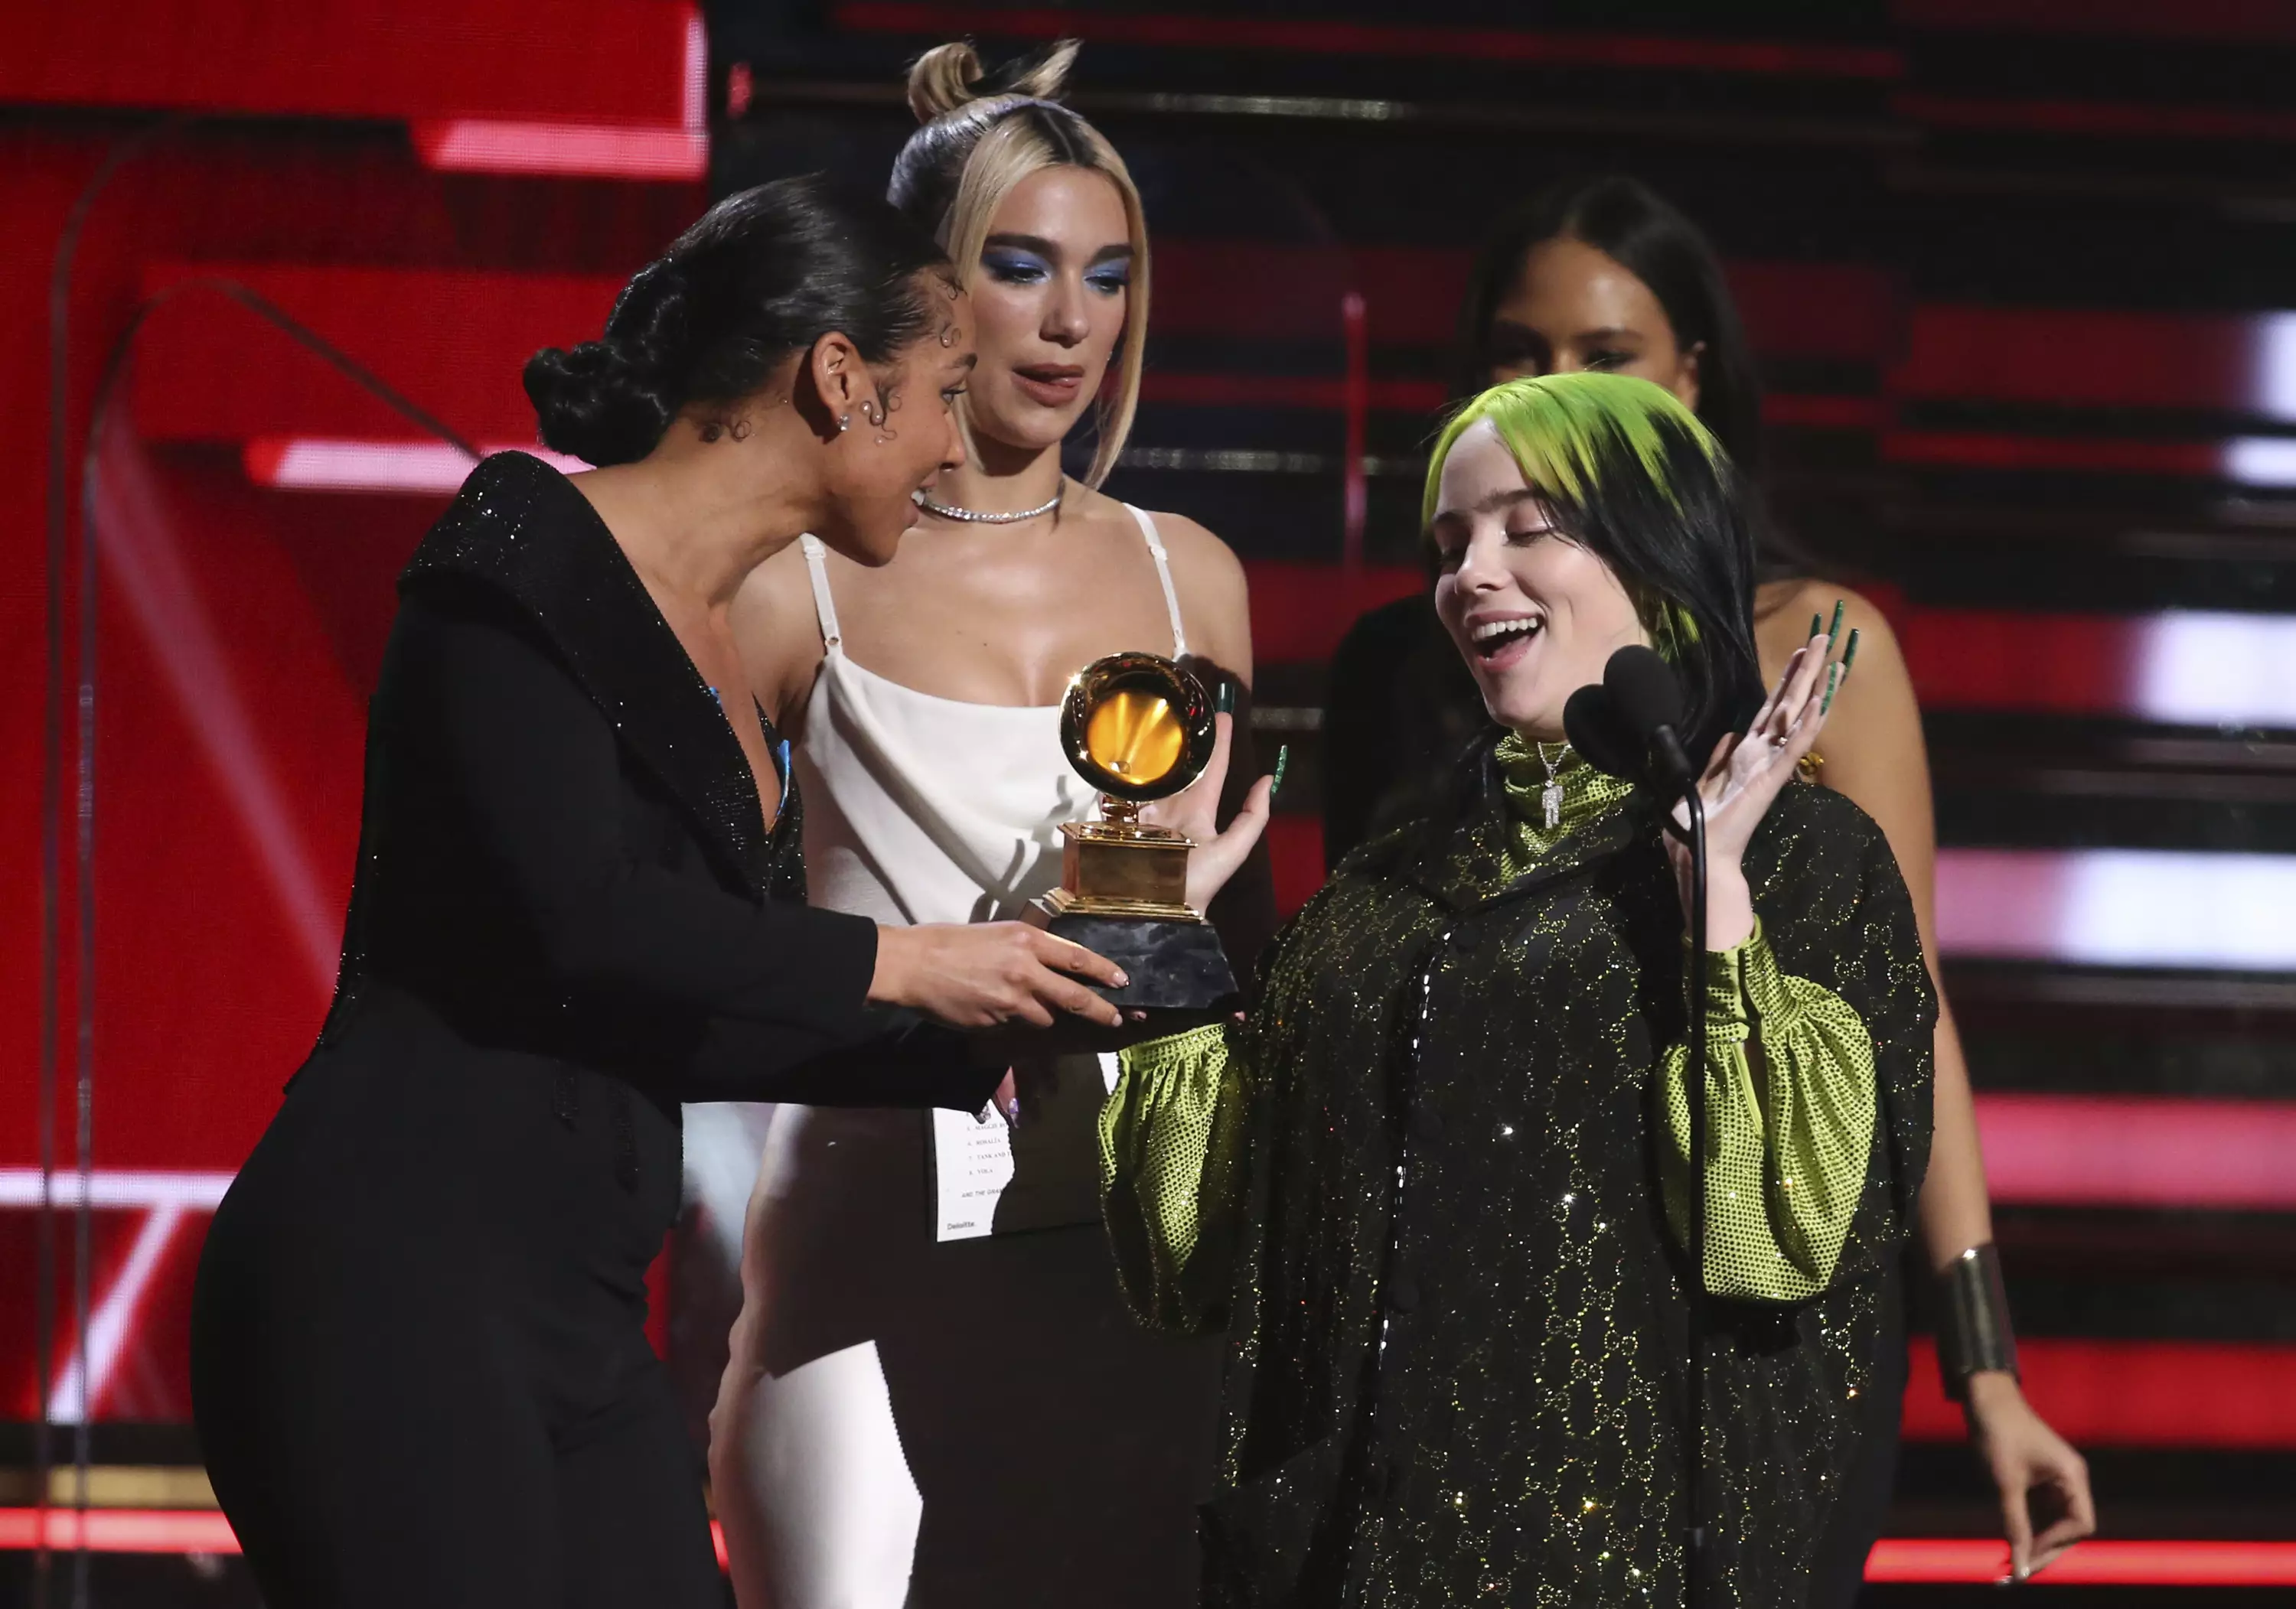 Billie Eilish accepting the Grammy award for Best New Artist.